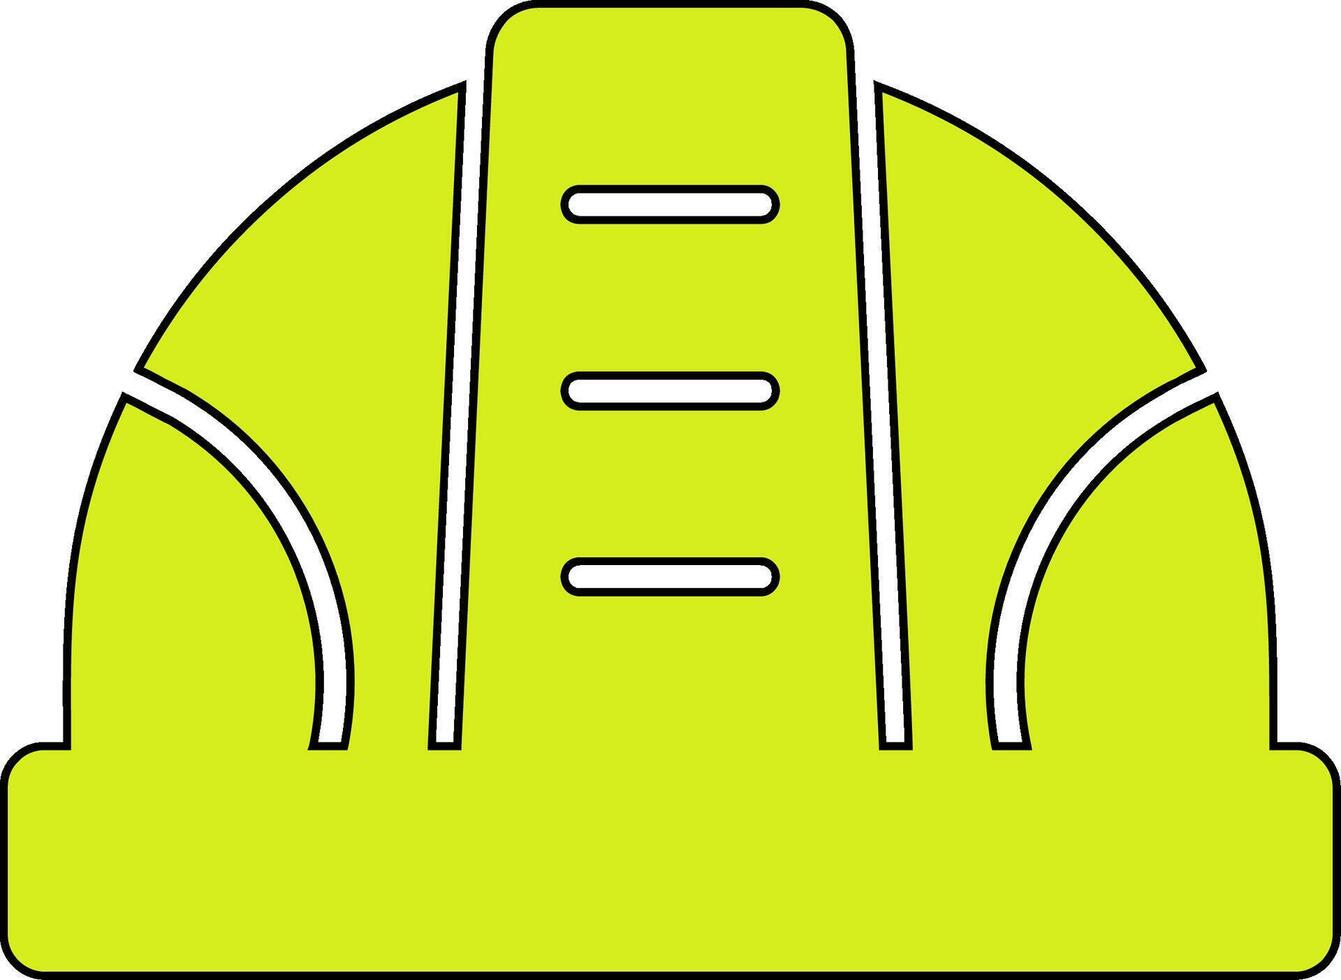 icono de vector de casco de construcción